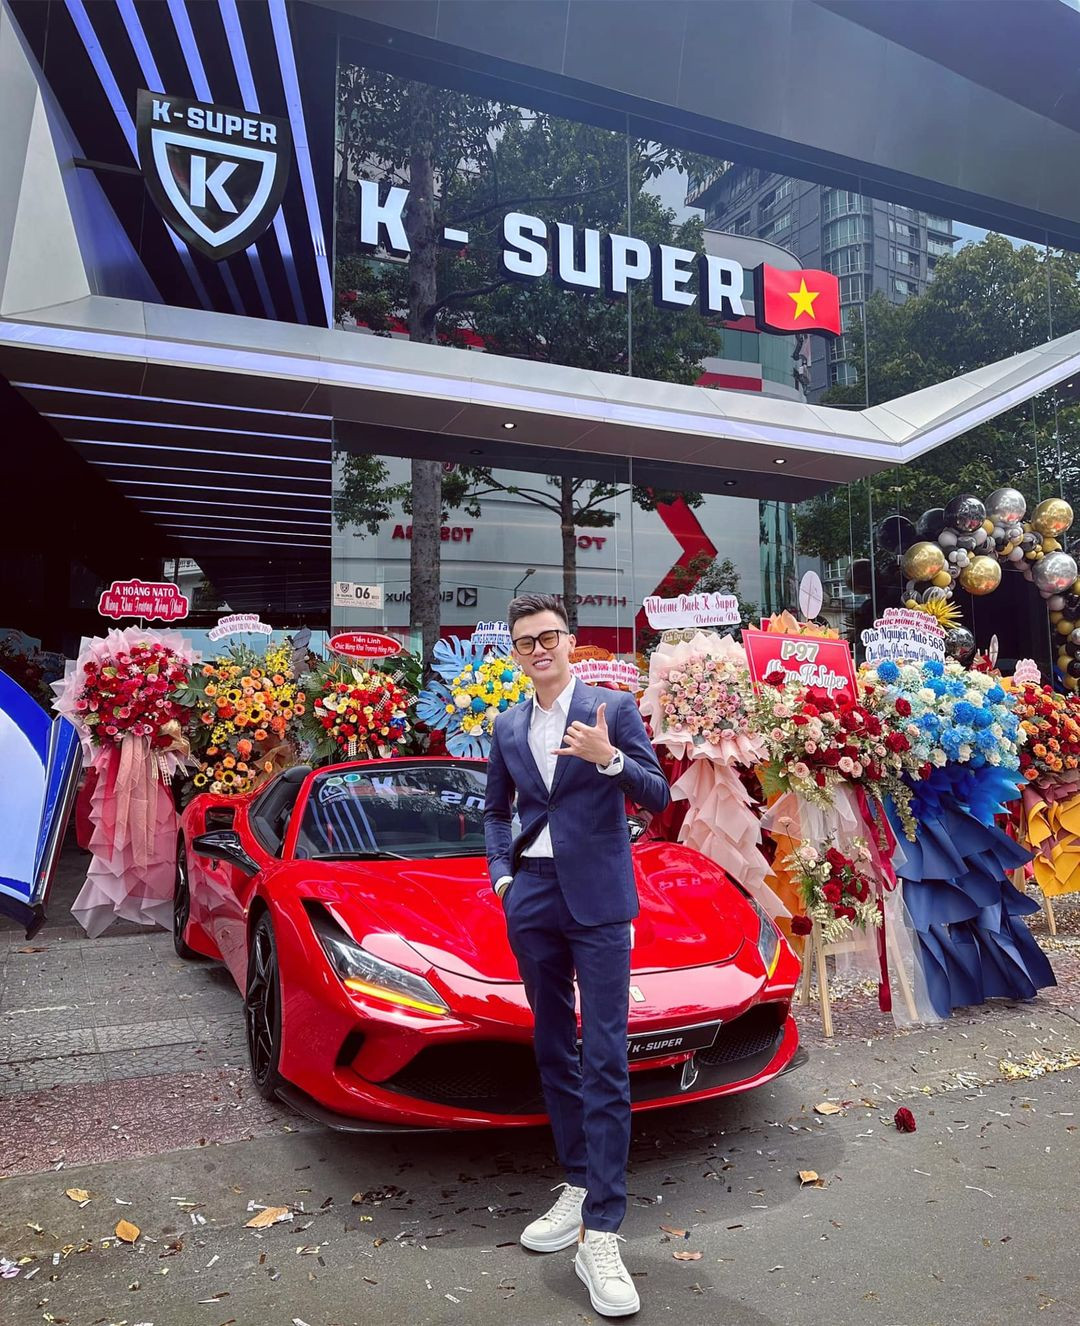 Phan Công Khanh sở hữu một showroom siêu xe với tên K - Super chứa hàng loạt những dòng siêu xe đình đám